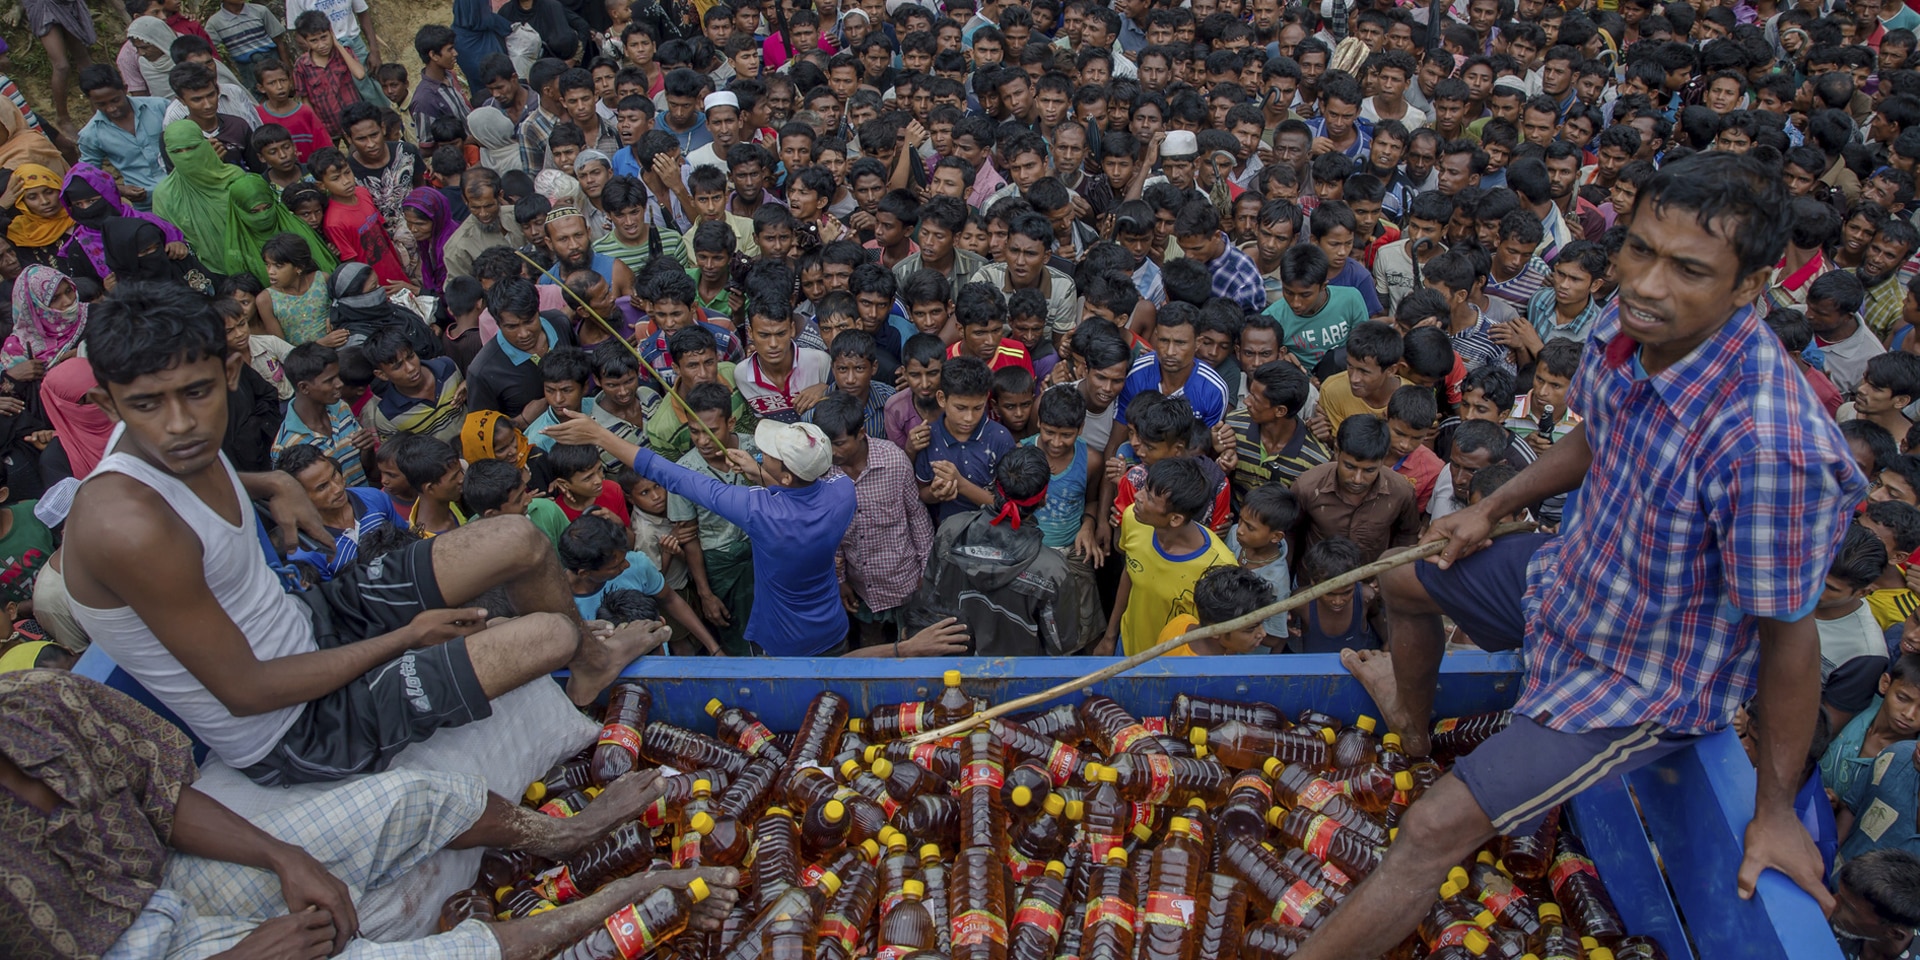  Una folla densa e compatta si stringe attorno a una distribuzione di bevande nel campo profughi di Kutupalong-Balukhali, in Bangladesh.